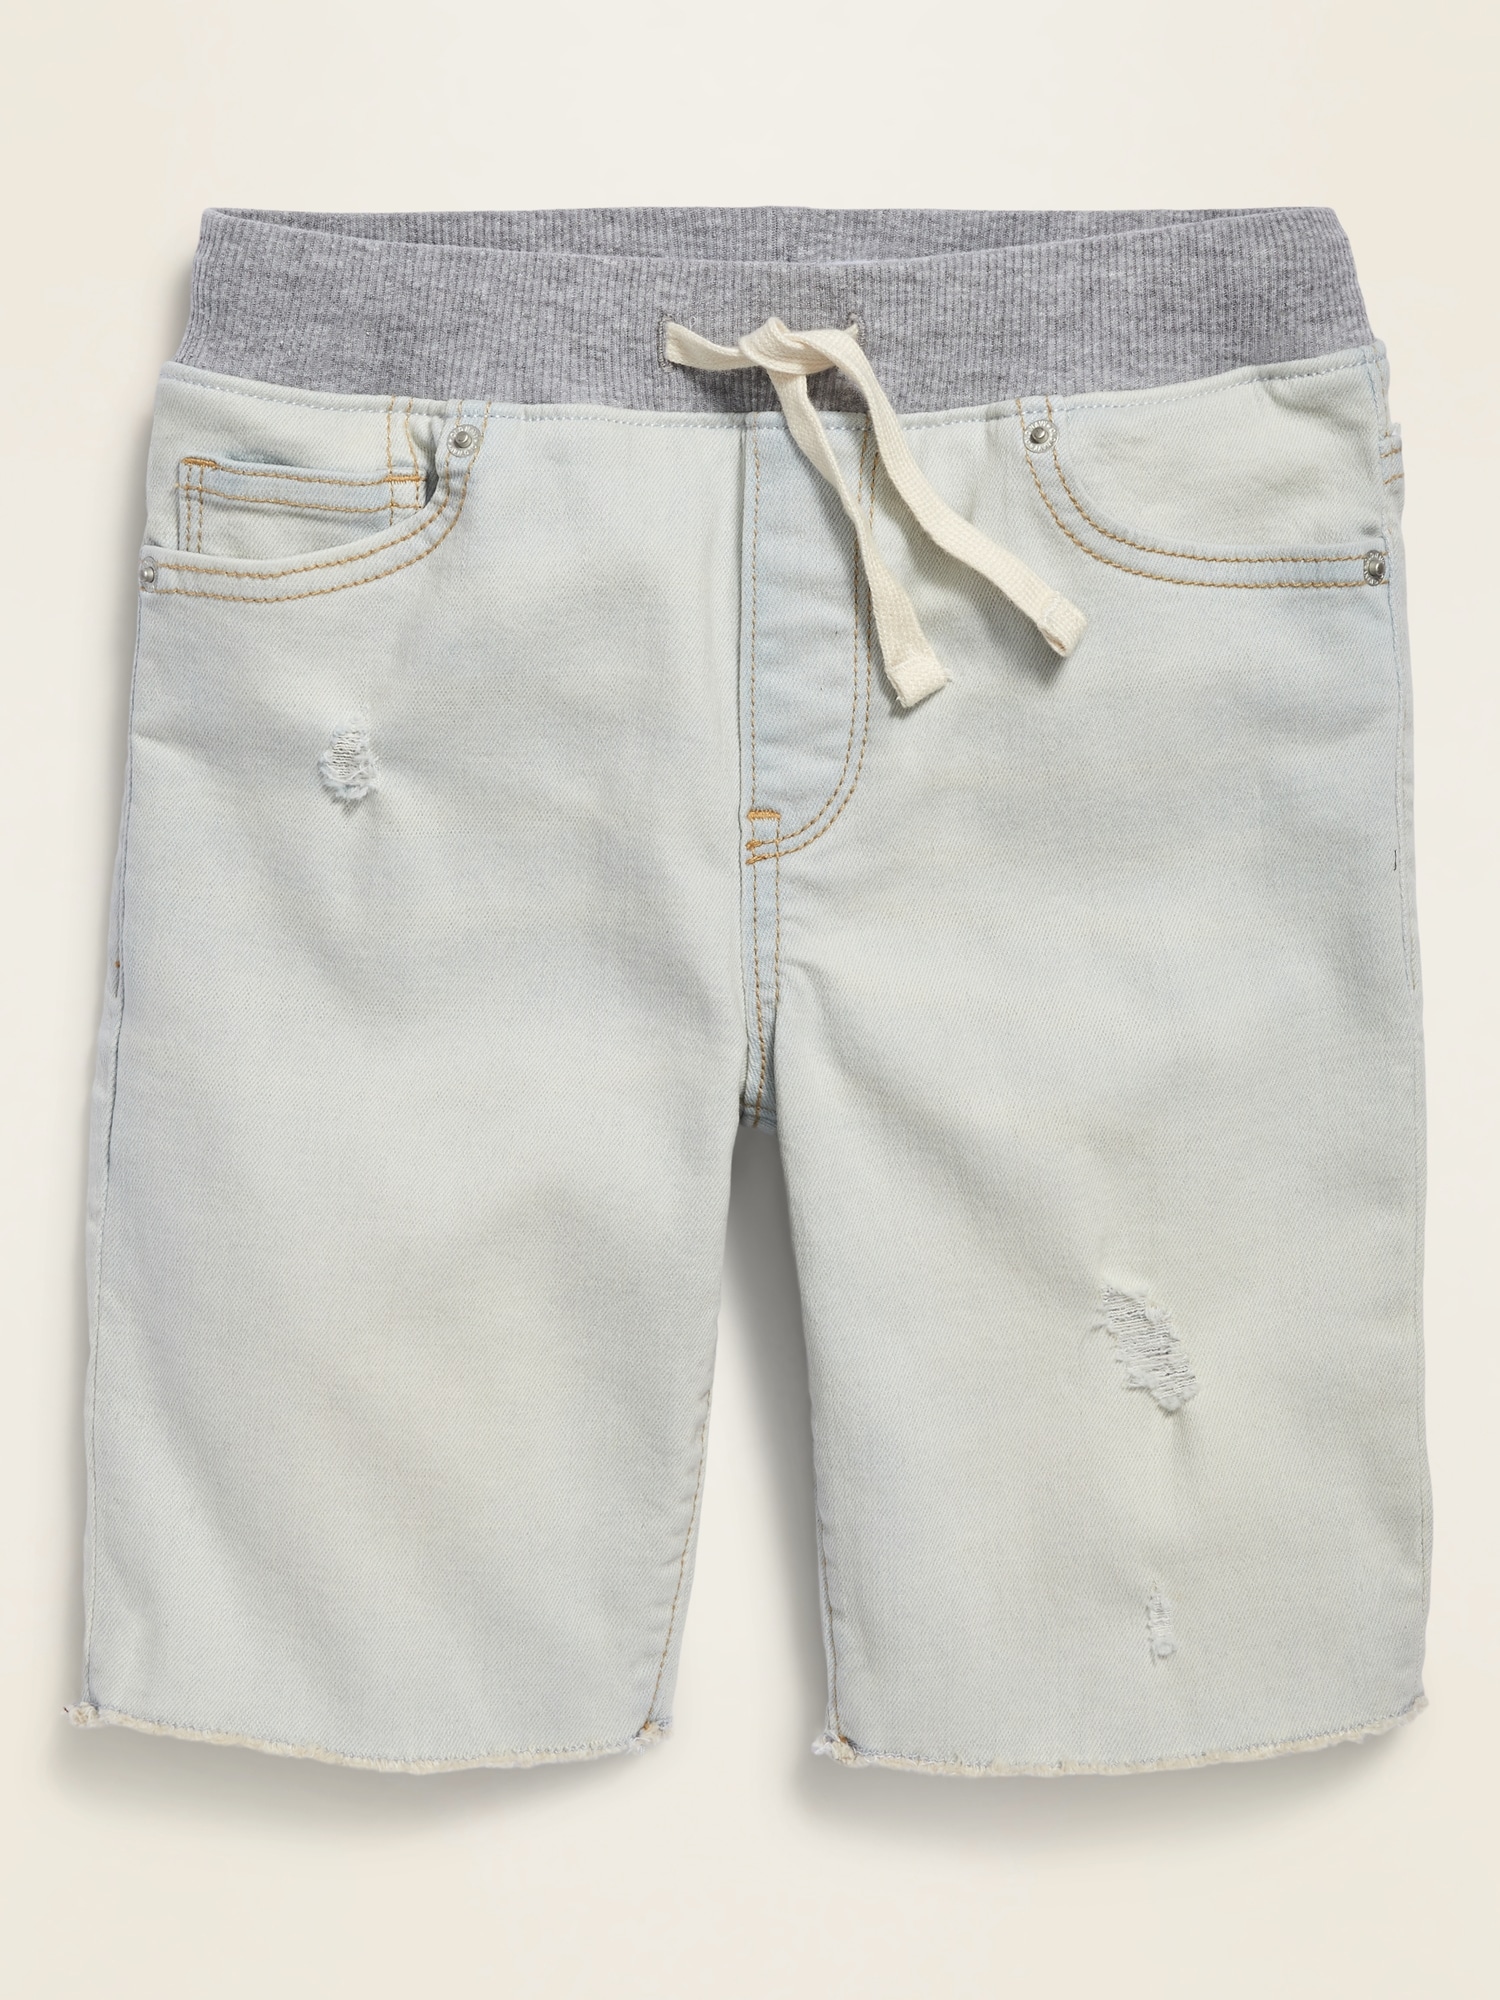 old navy boys jean shorts